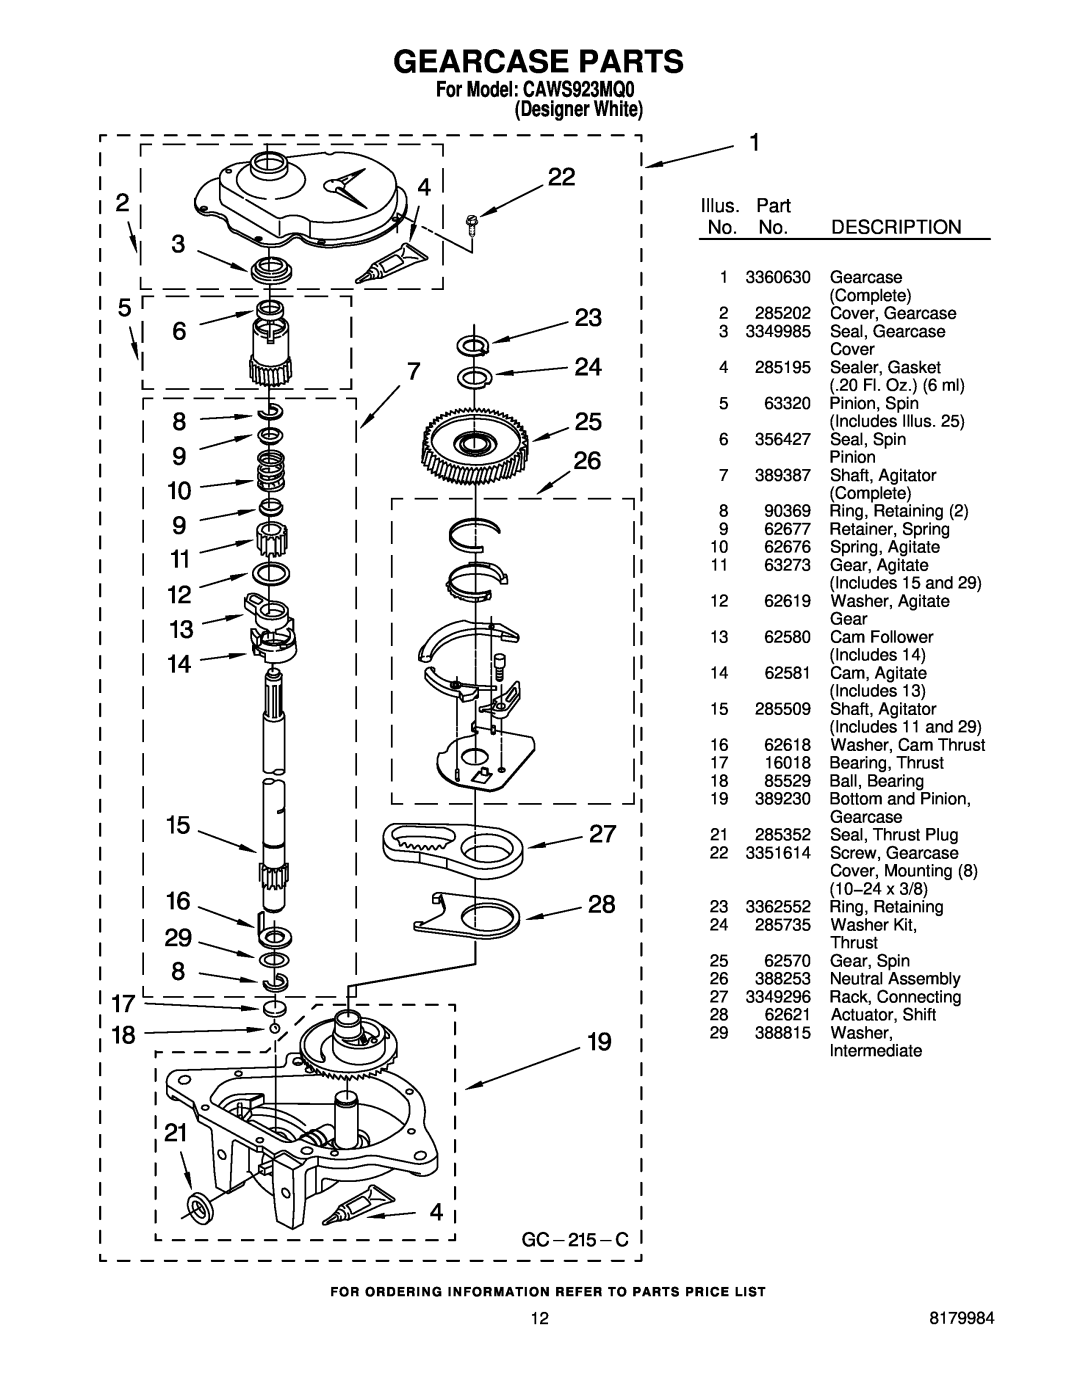 Crosley manual Gearcase Parts, For Model CAWS923MQ0 Designer White, Illus, Description 